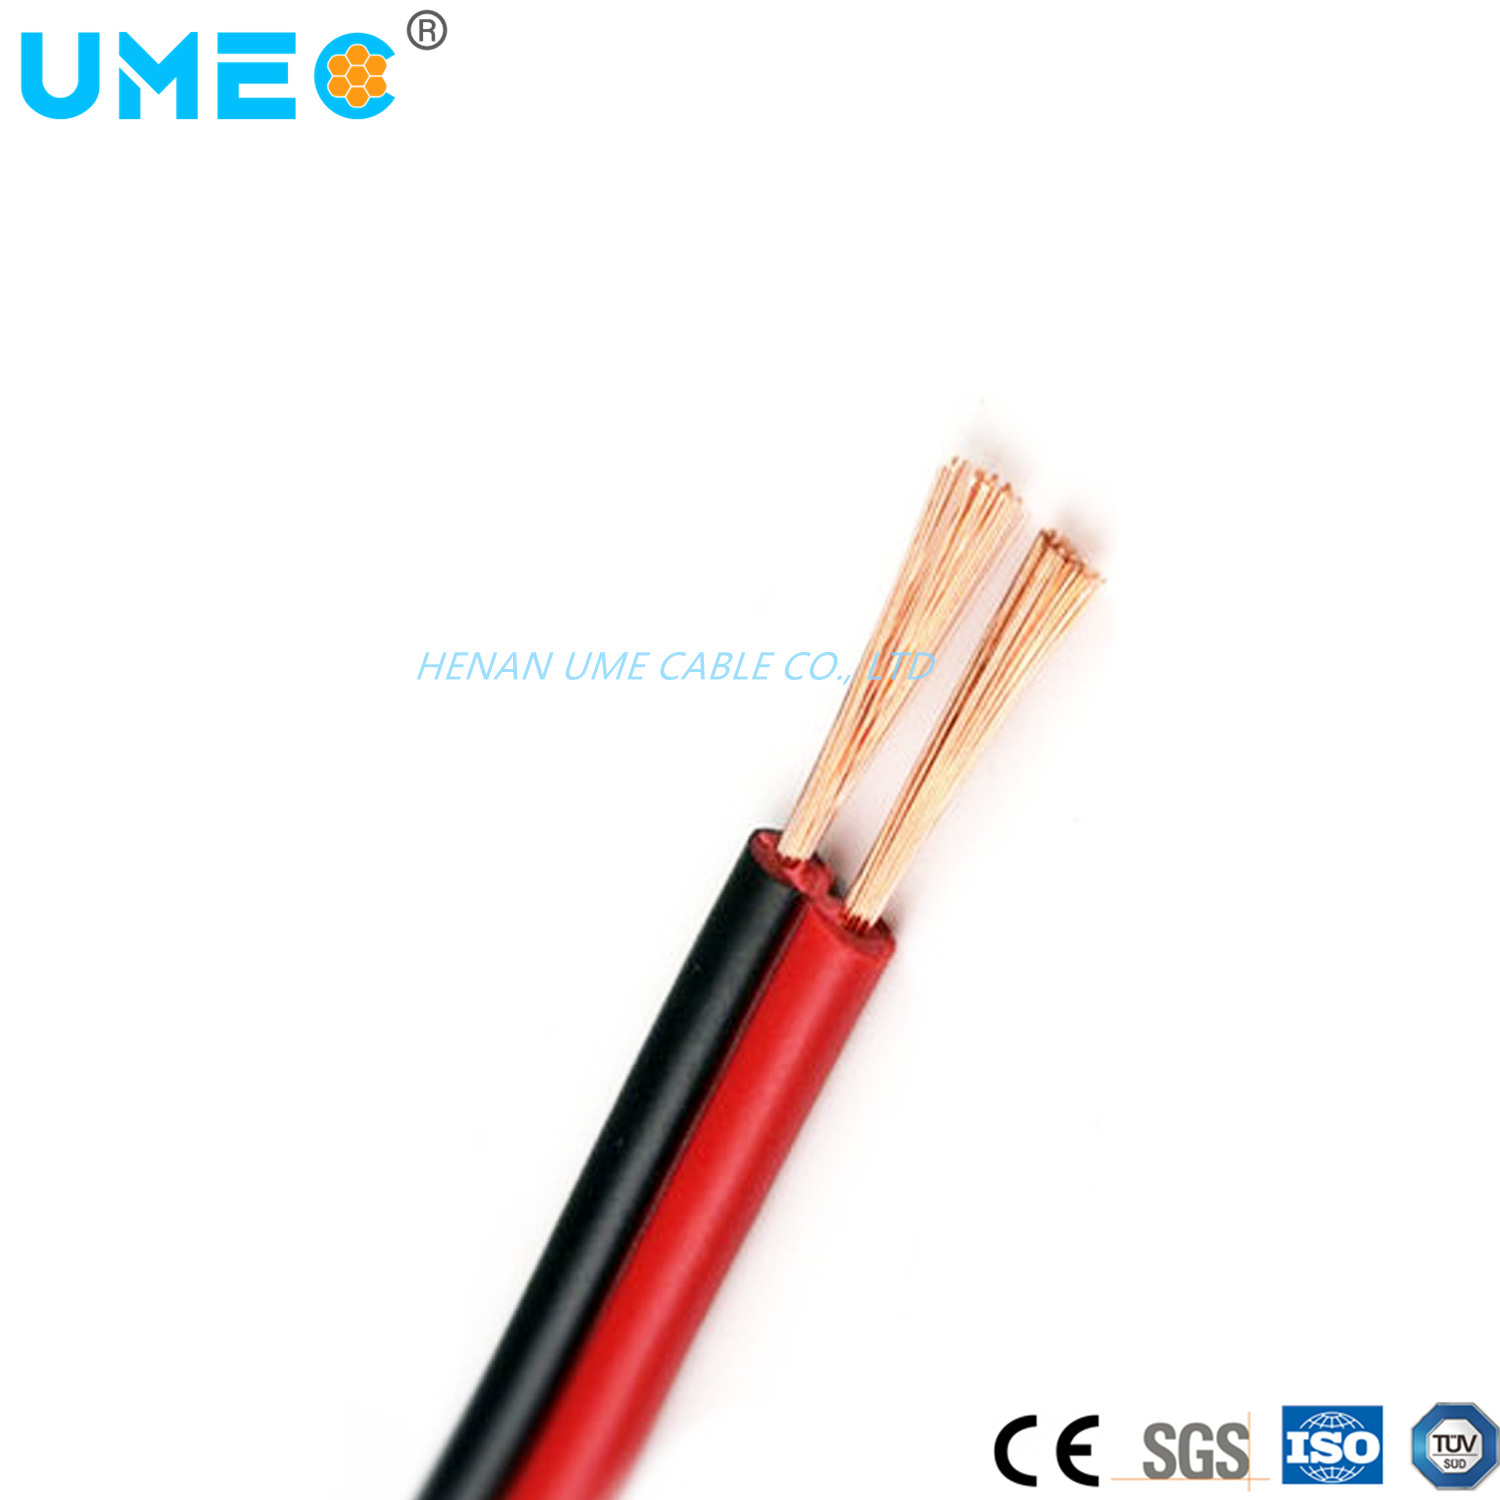 
                Многожильный многожильный кабель 0.75/1.25/2 мм2 многожильный кабель SPT 300 В.
            